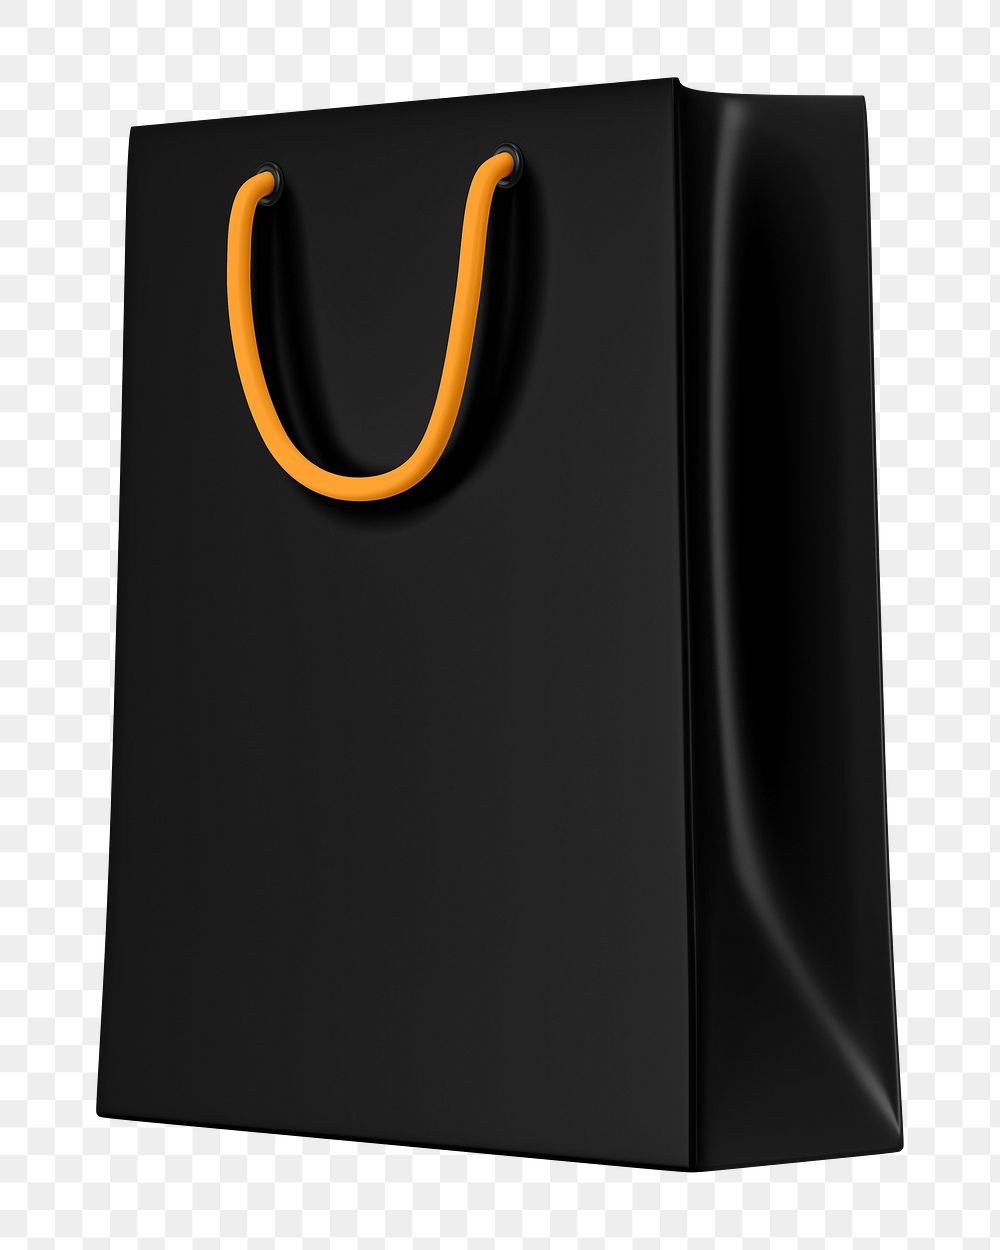 Black shopping png bag, 3D object illustration on transparent background